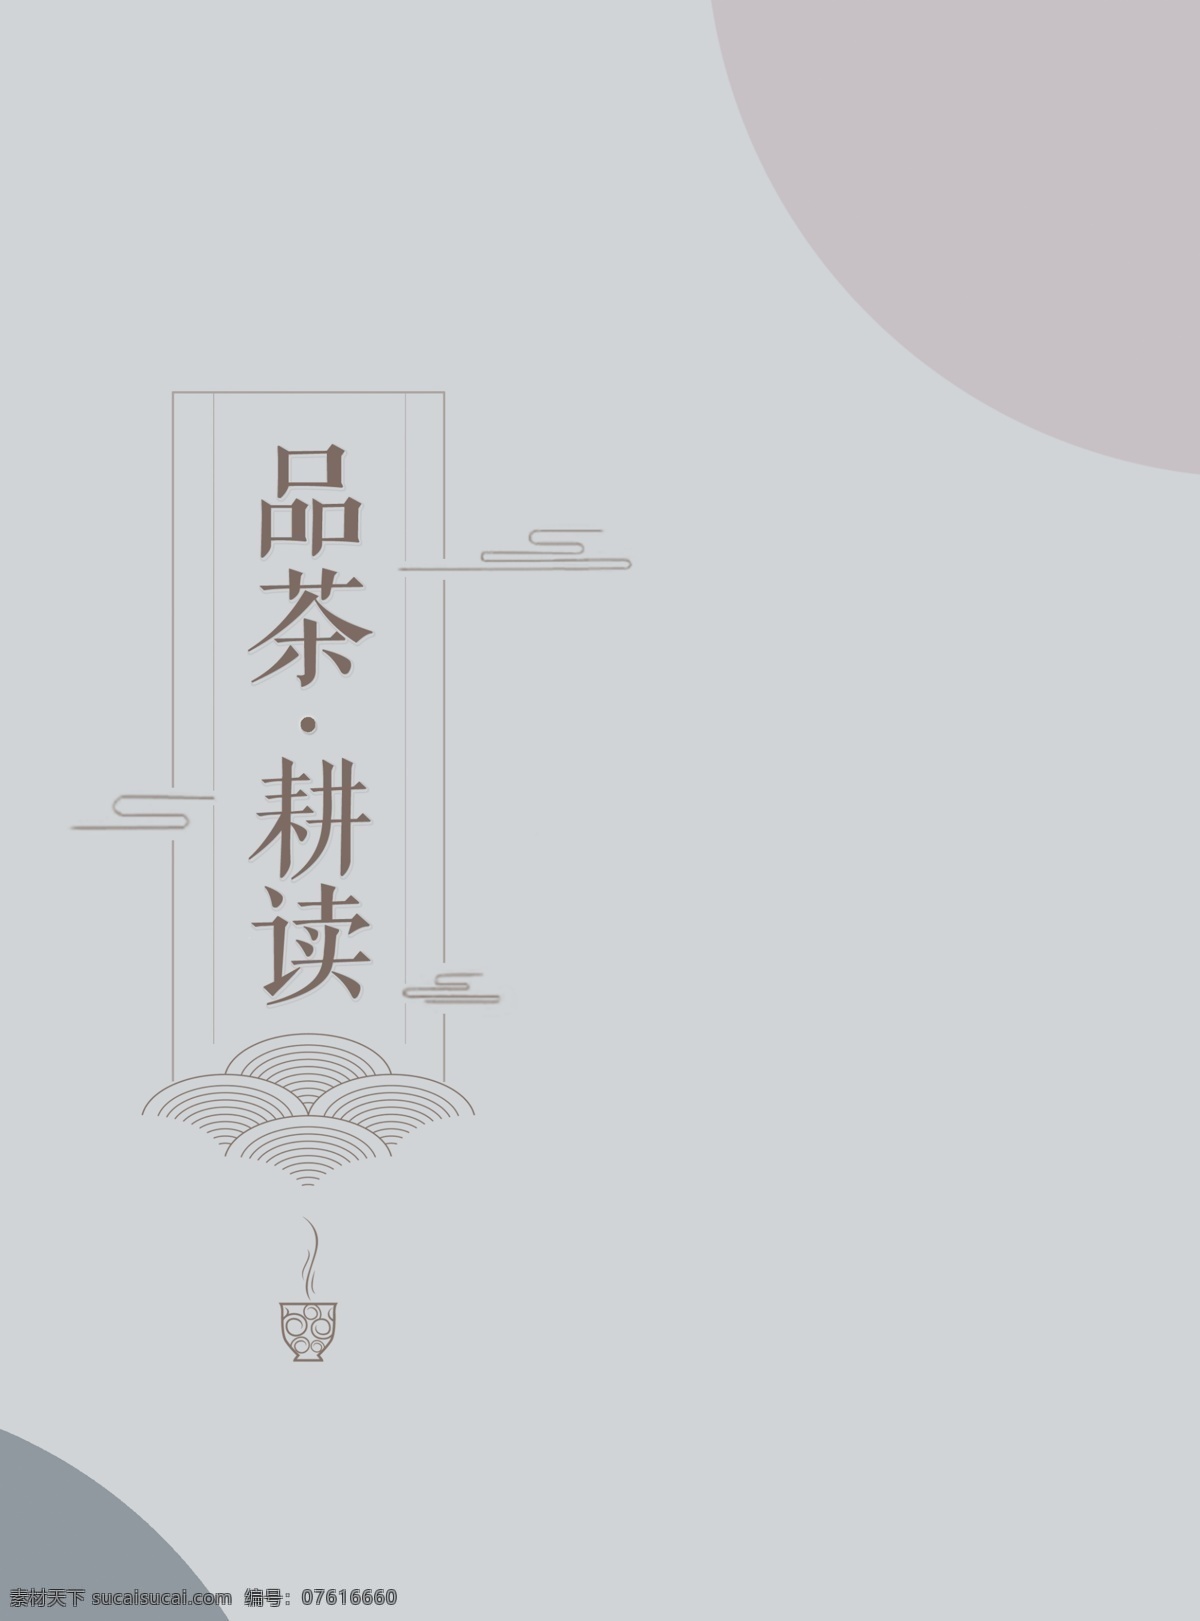 中国 风 企业 文化建设 耕读 留白海报 品茶 企业文化 中国风